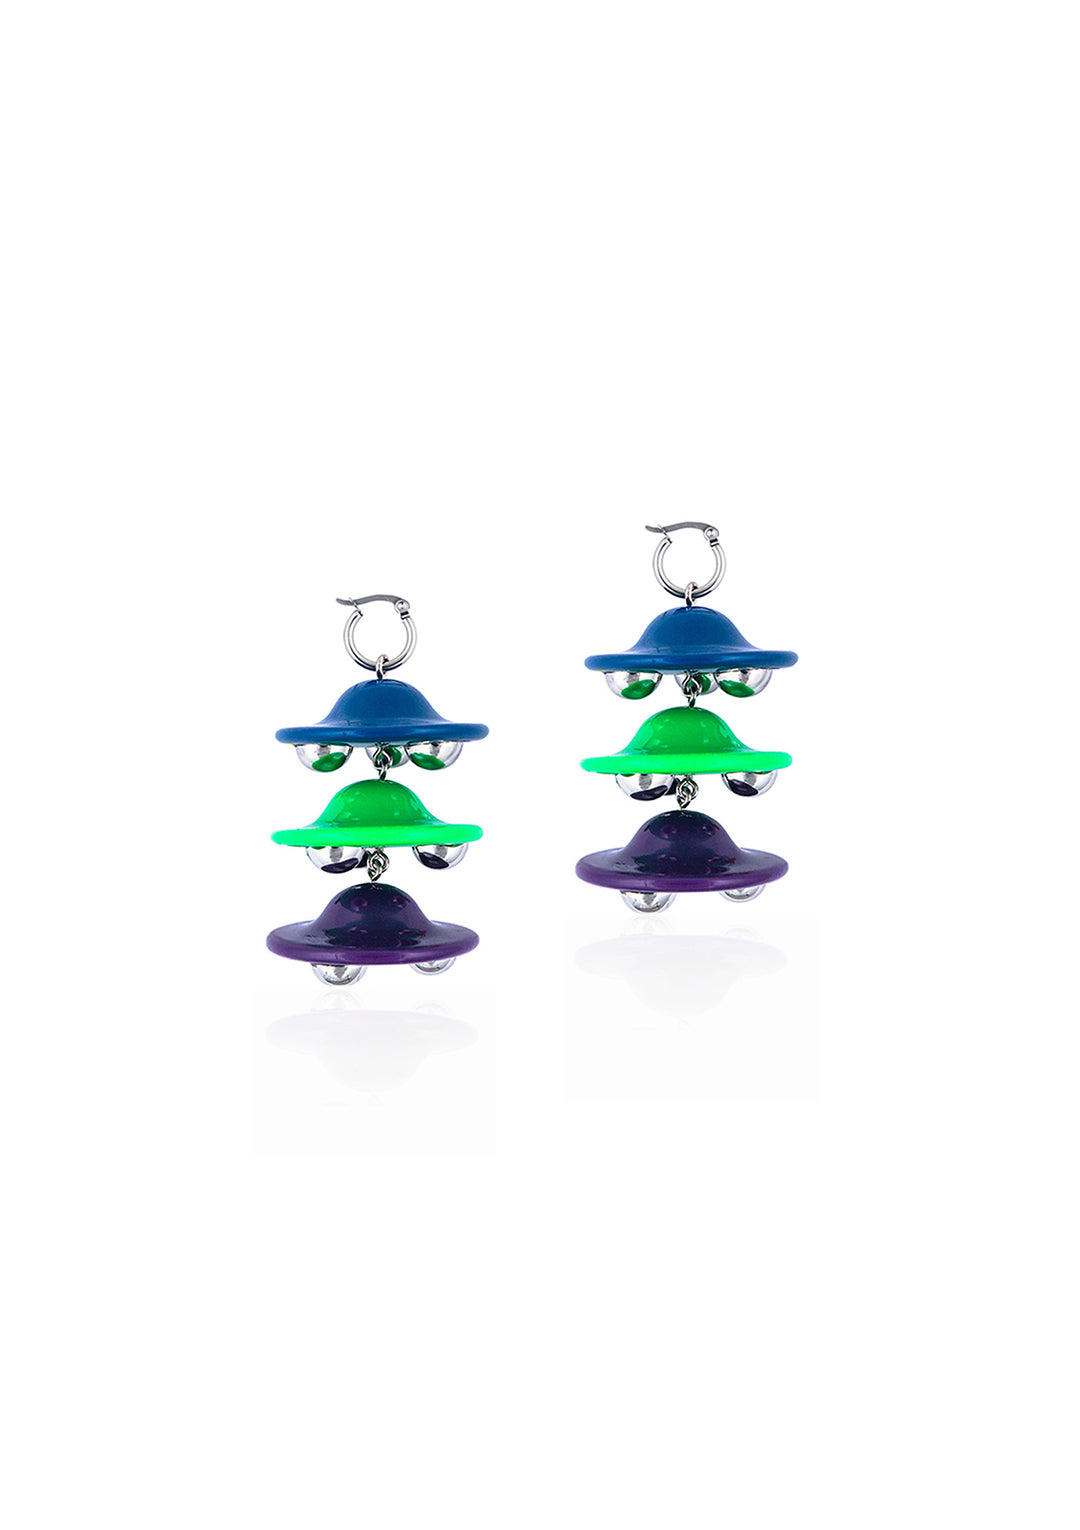 Three spaceship earrings